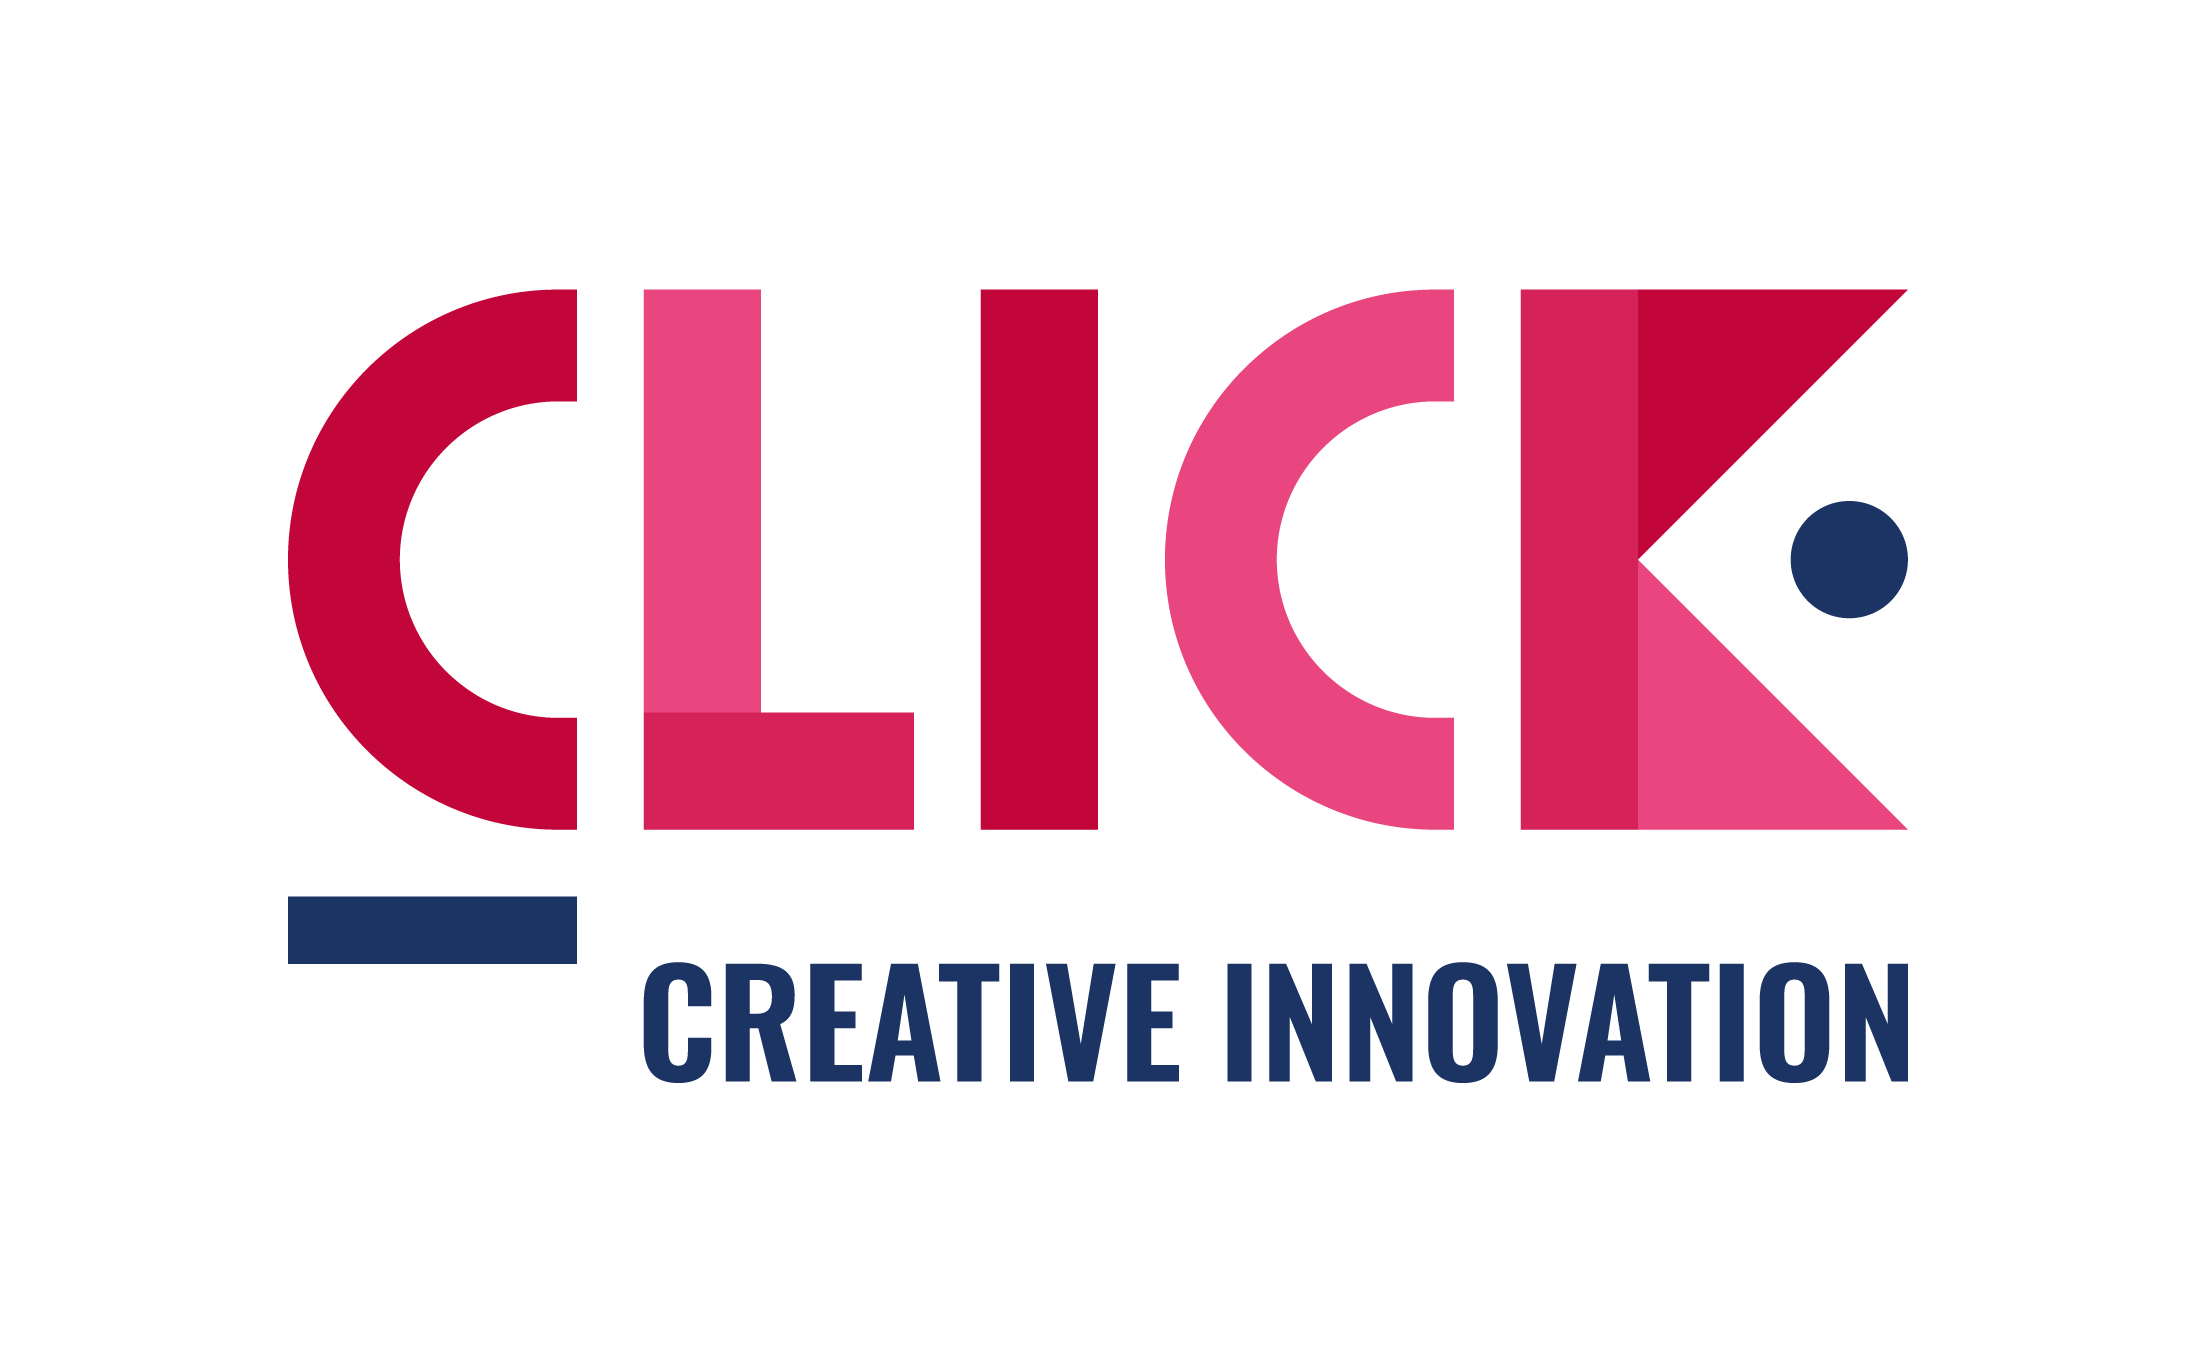 CLICK - Creative Innovation - Quadri